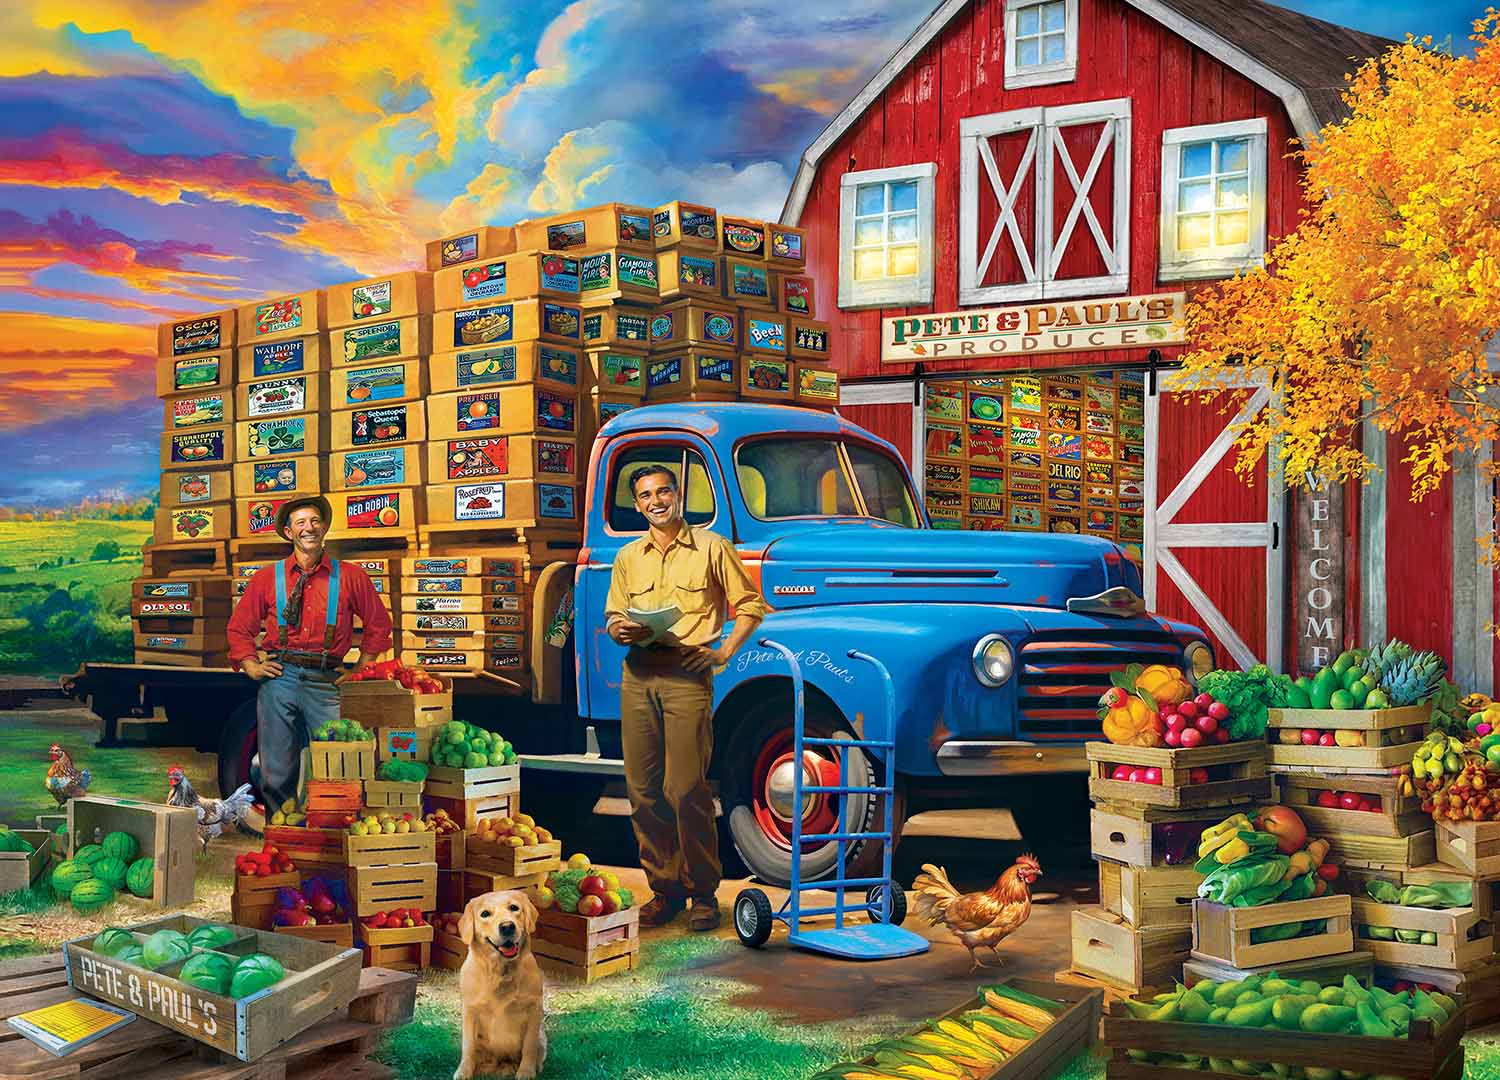 Farm & Country - Pete & Paul's Produce Farm Jigsaw Puzzle